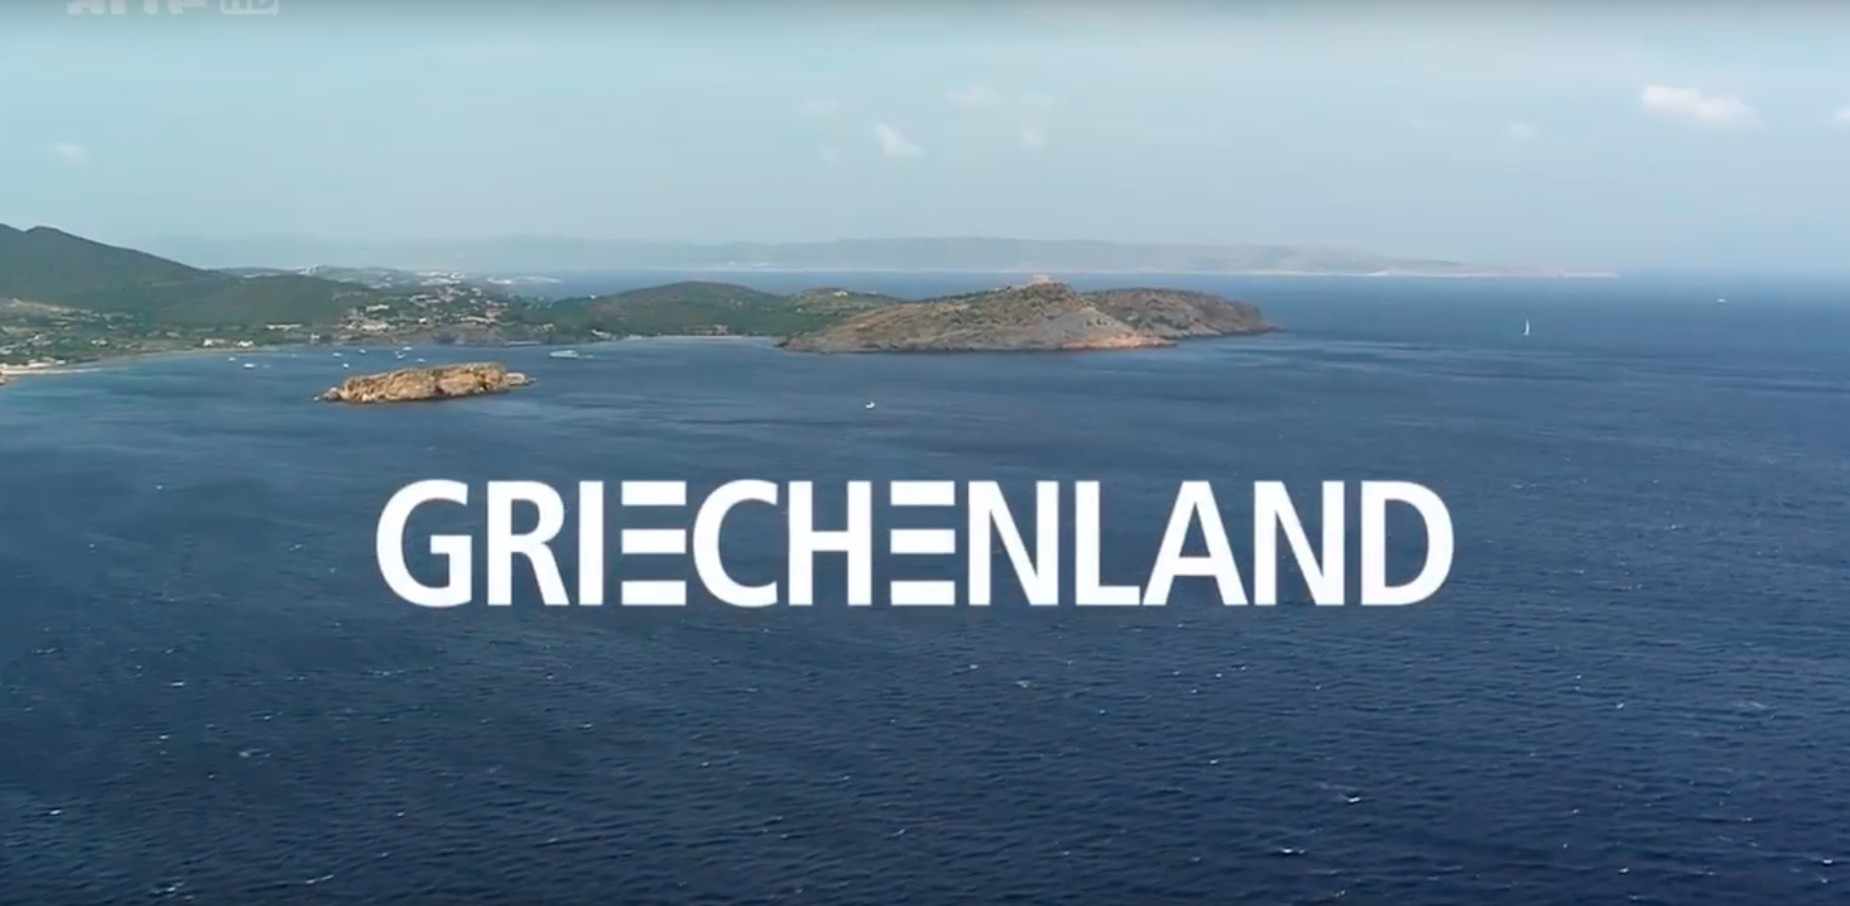 Δεκατέσσερις ώρες αφιέρωμα στην Ελλάδα από την αυστριακή τηλεόραση [Βίντεο]